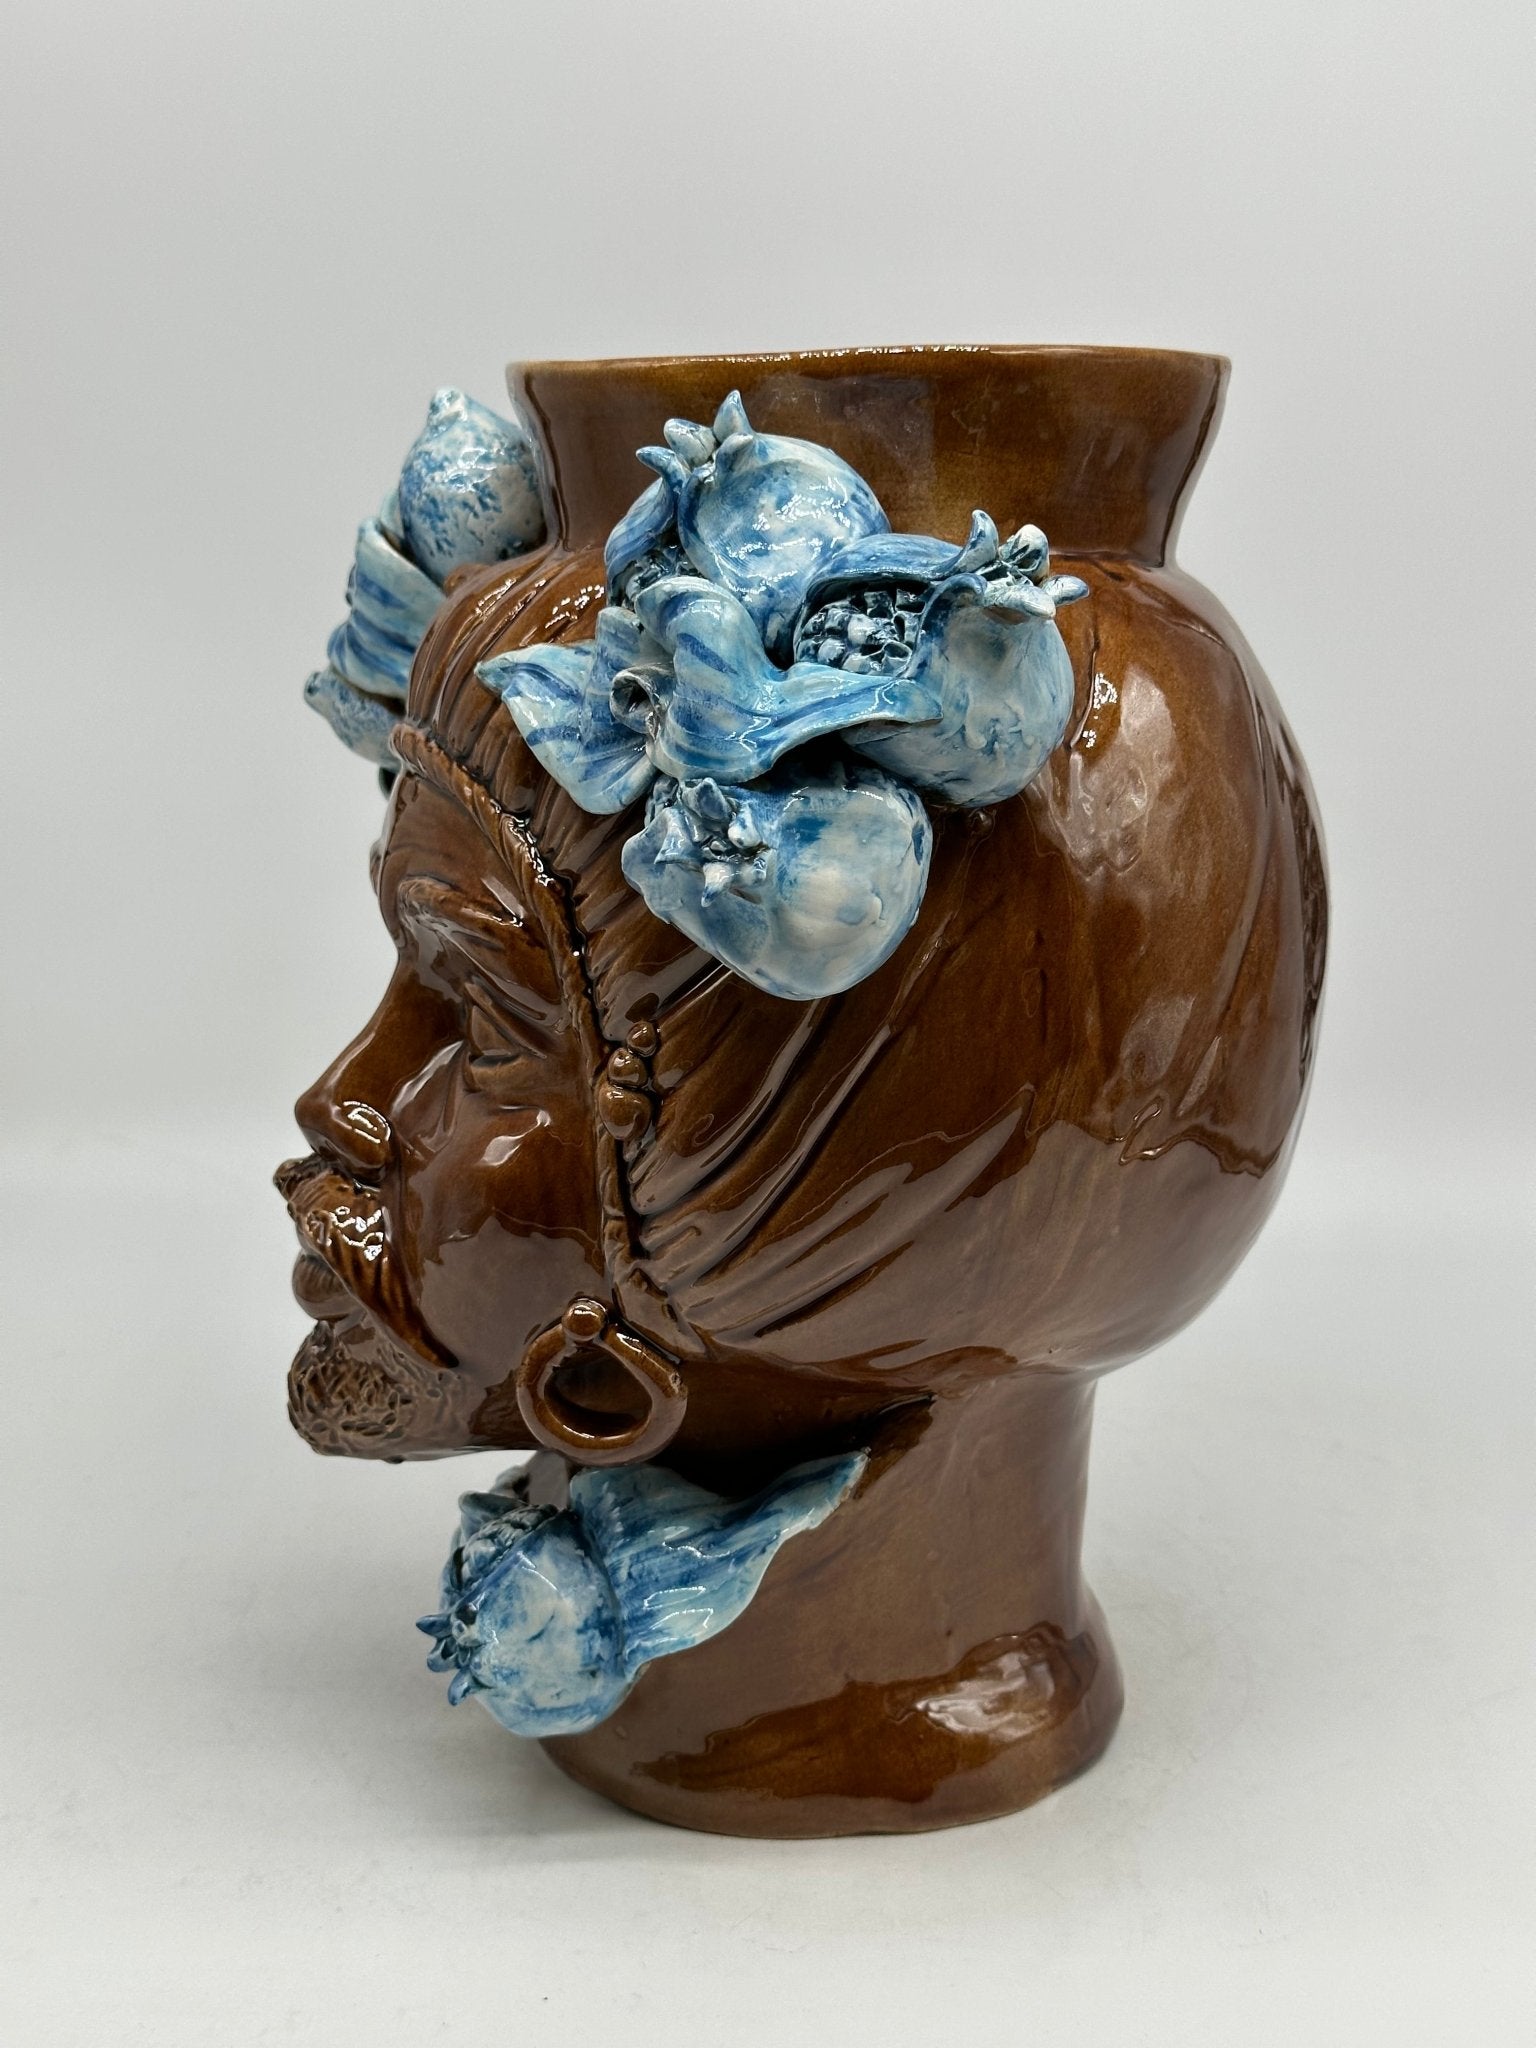 Teste di Moro Mediterraneo Ceramica Caltagirone cm H.29 L.22 Artigianale Marrone Azzurro - DD CERAMICHE SICILIANE